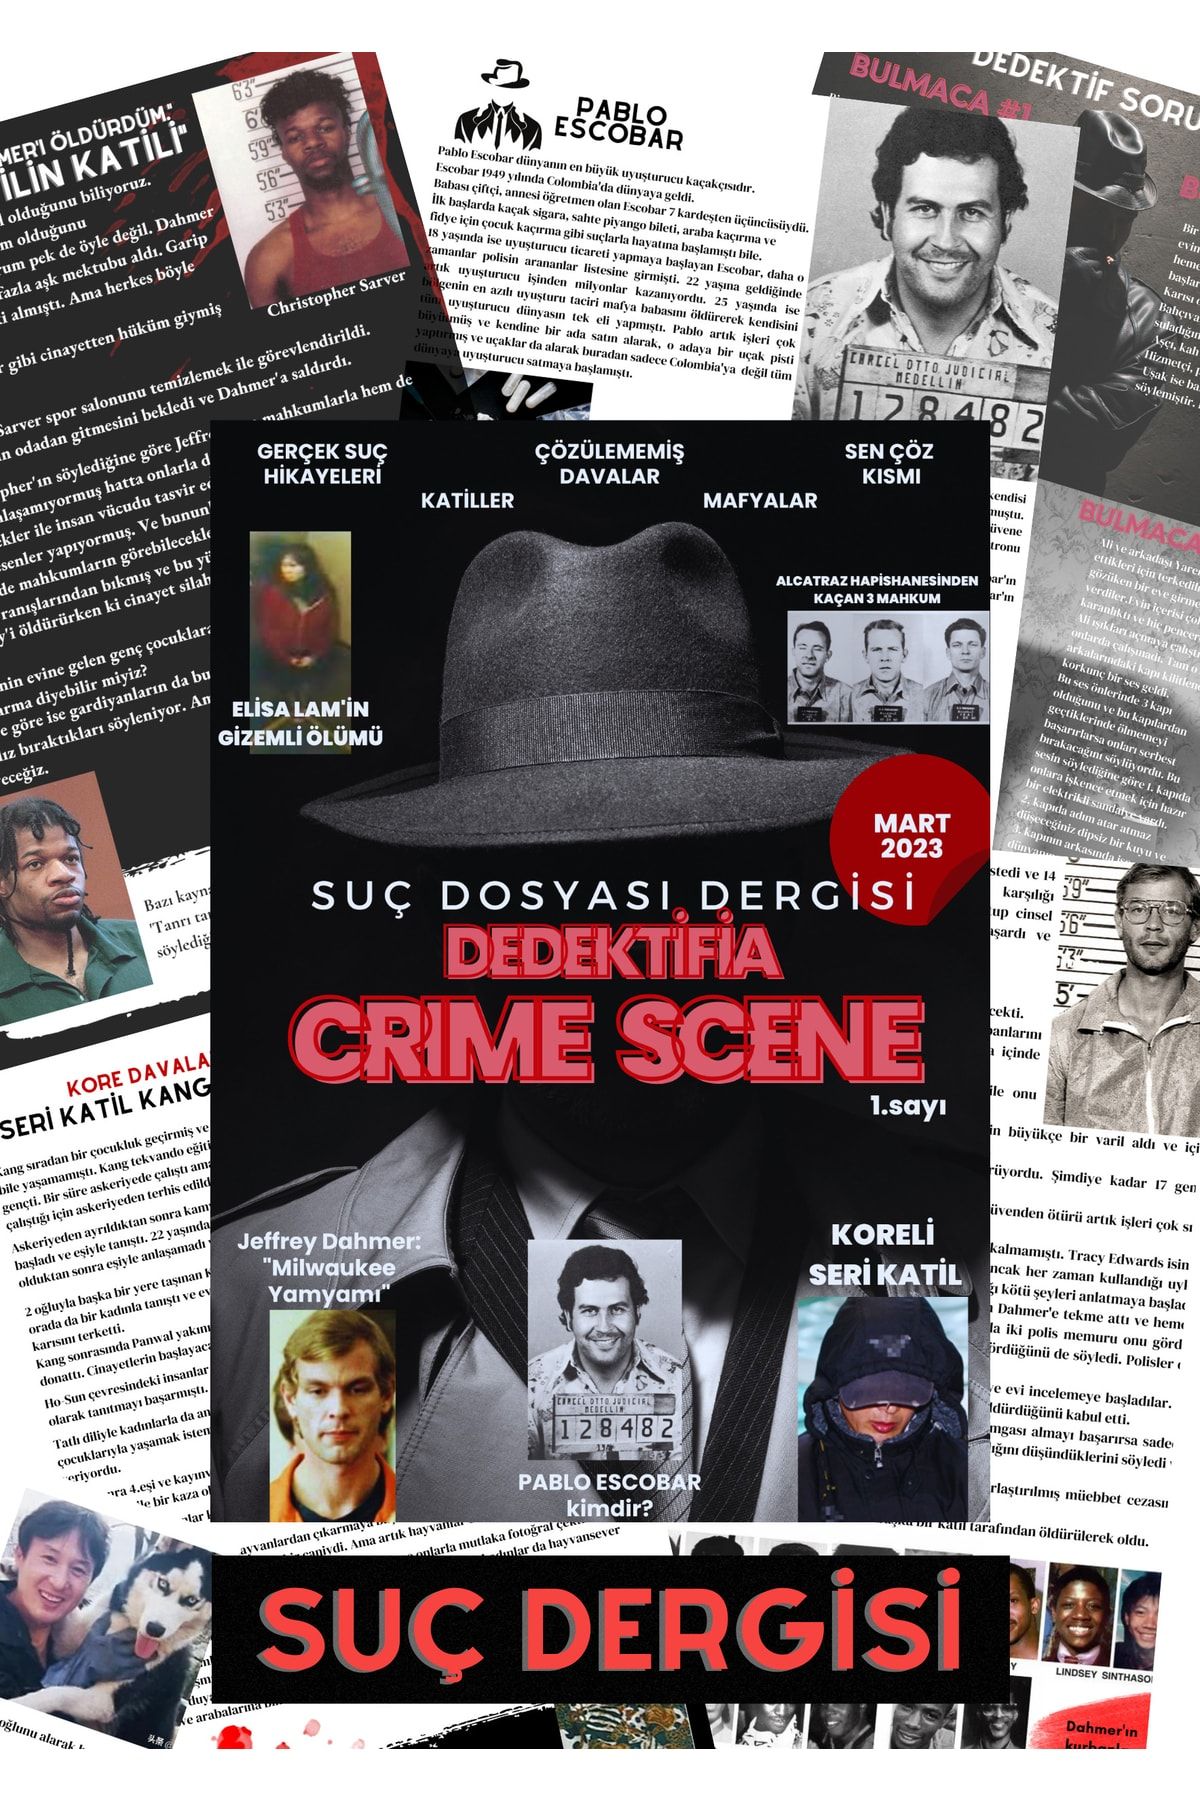 dedektifia Kriminal Olaylar Ve Gizemli Cinayetler Dergisi,dedektiflik Ve Suç Dünyası Dergisi 1.sayı